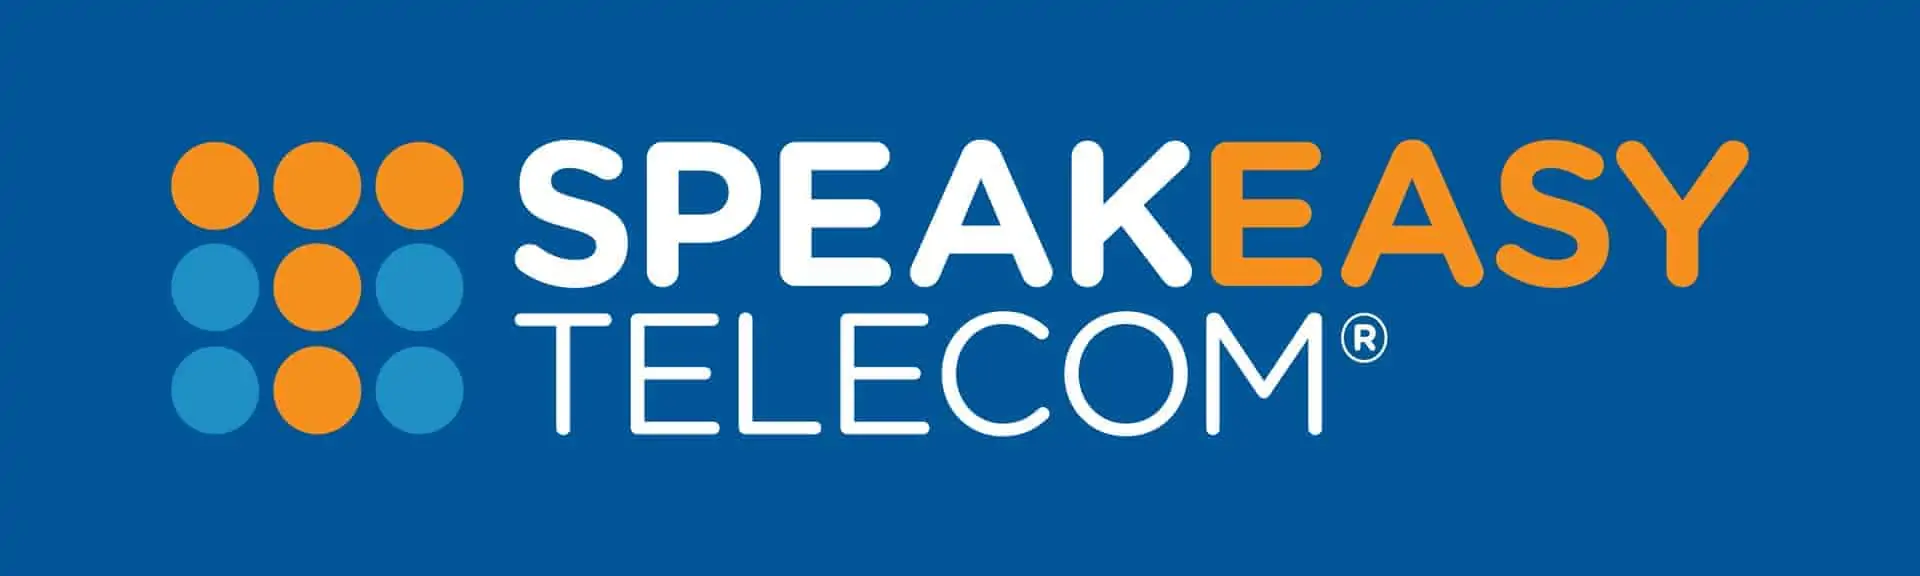 Speakeasy Telecom